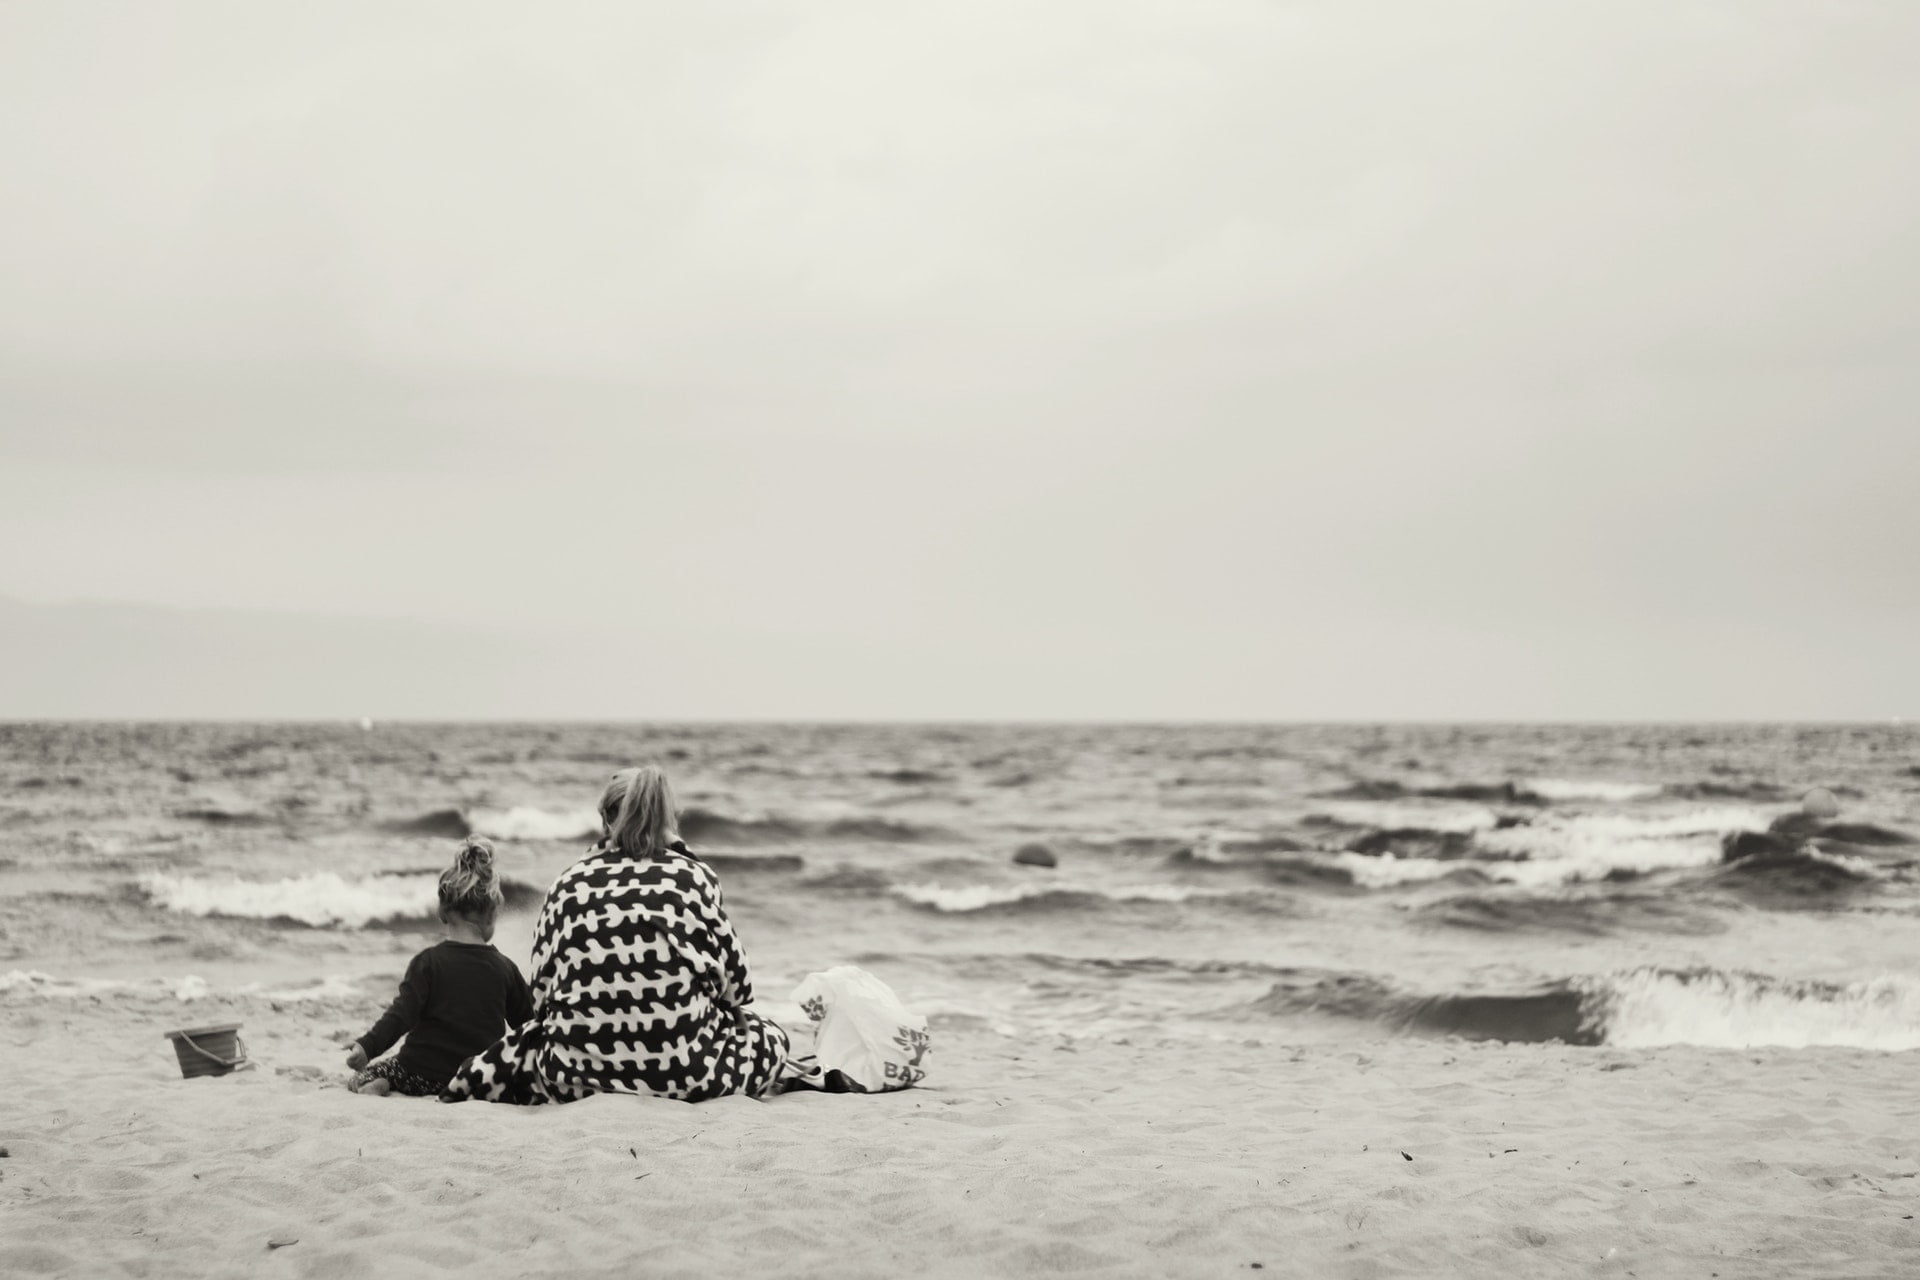 離｜藍雀一行詩 woman and child sitting on sand near body of water mother ocean 1